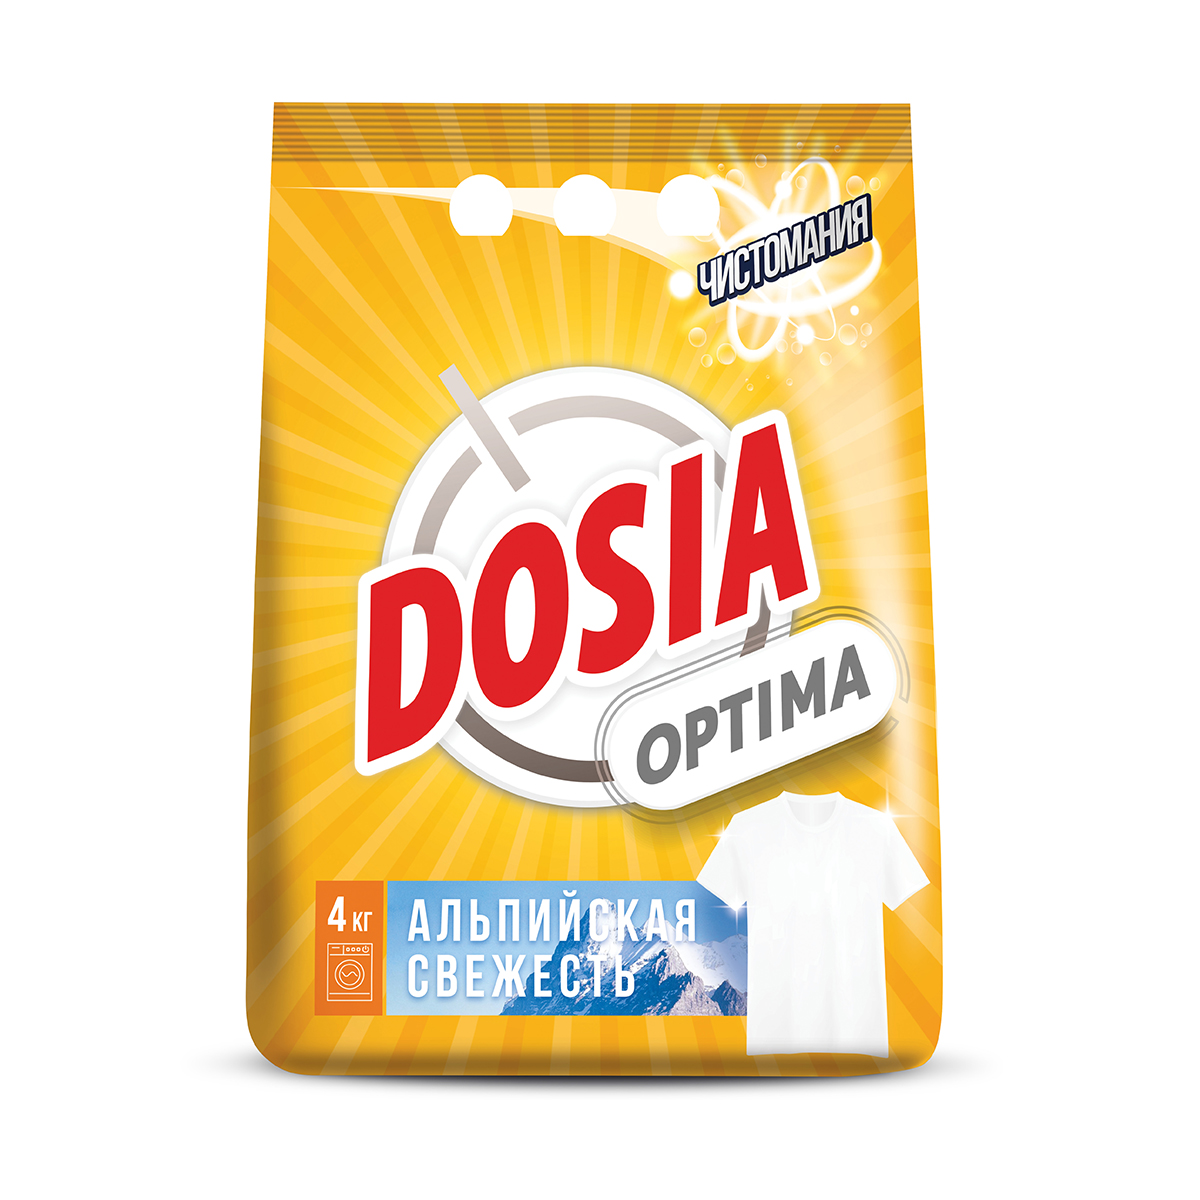 Стиральный порошок "dosia optima альпийская свежесть" 4 кг (1/4)